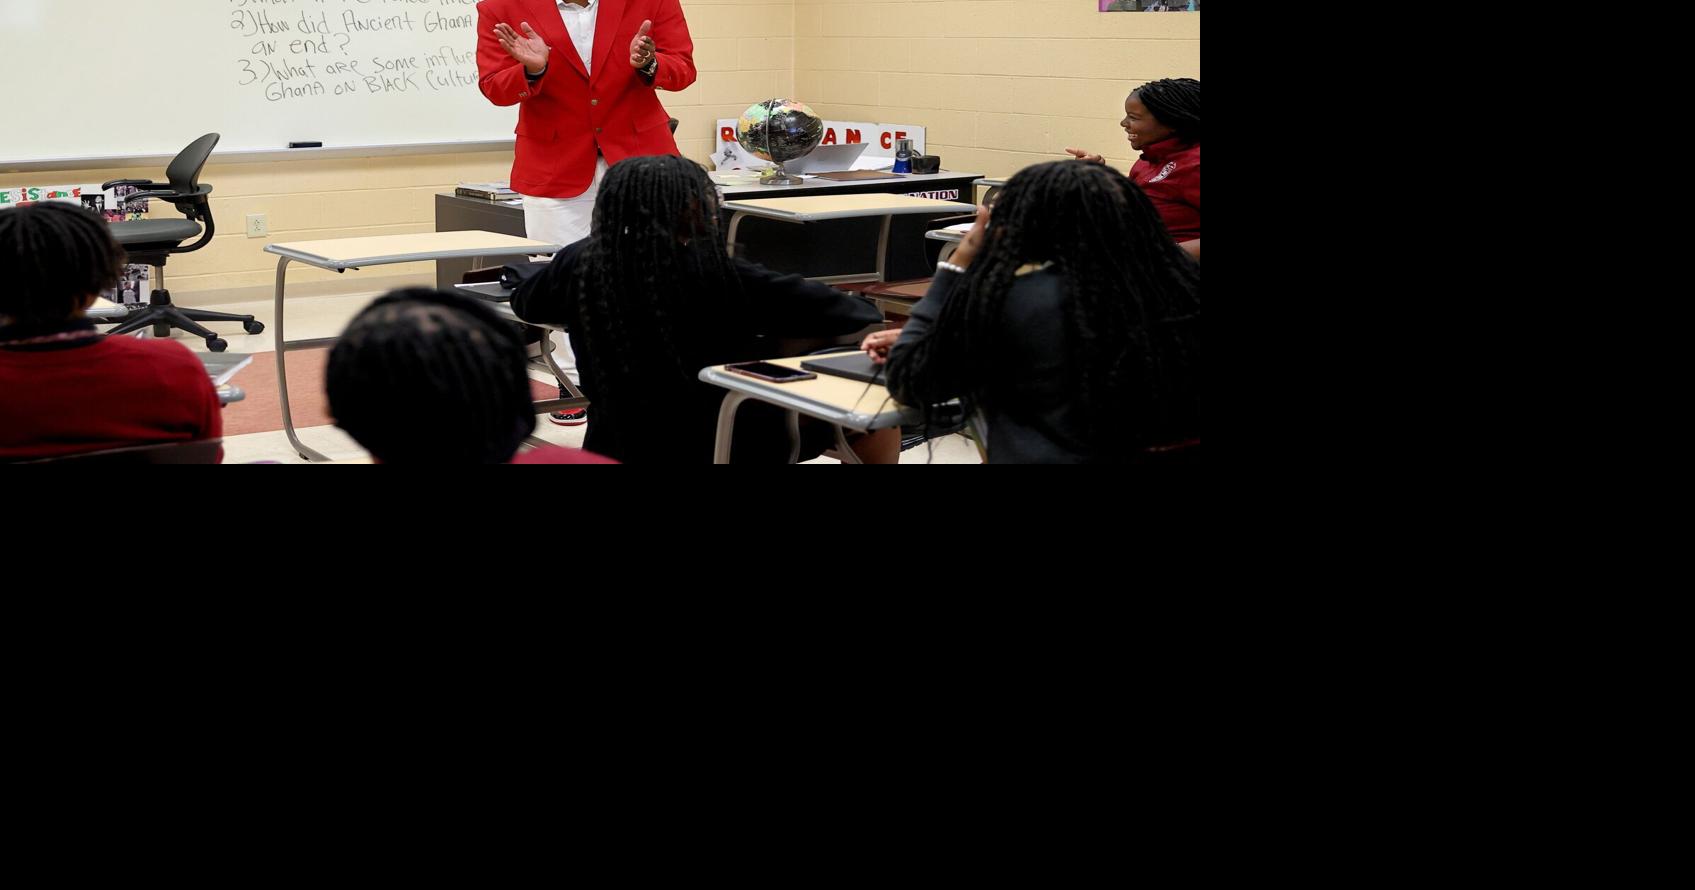 St Louis Cardinals Teacher